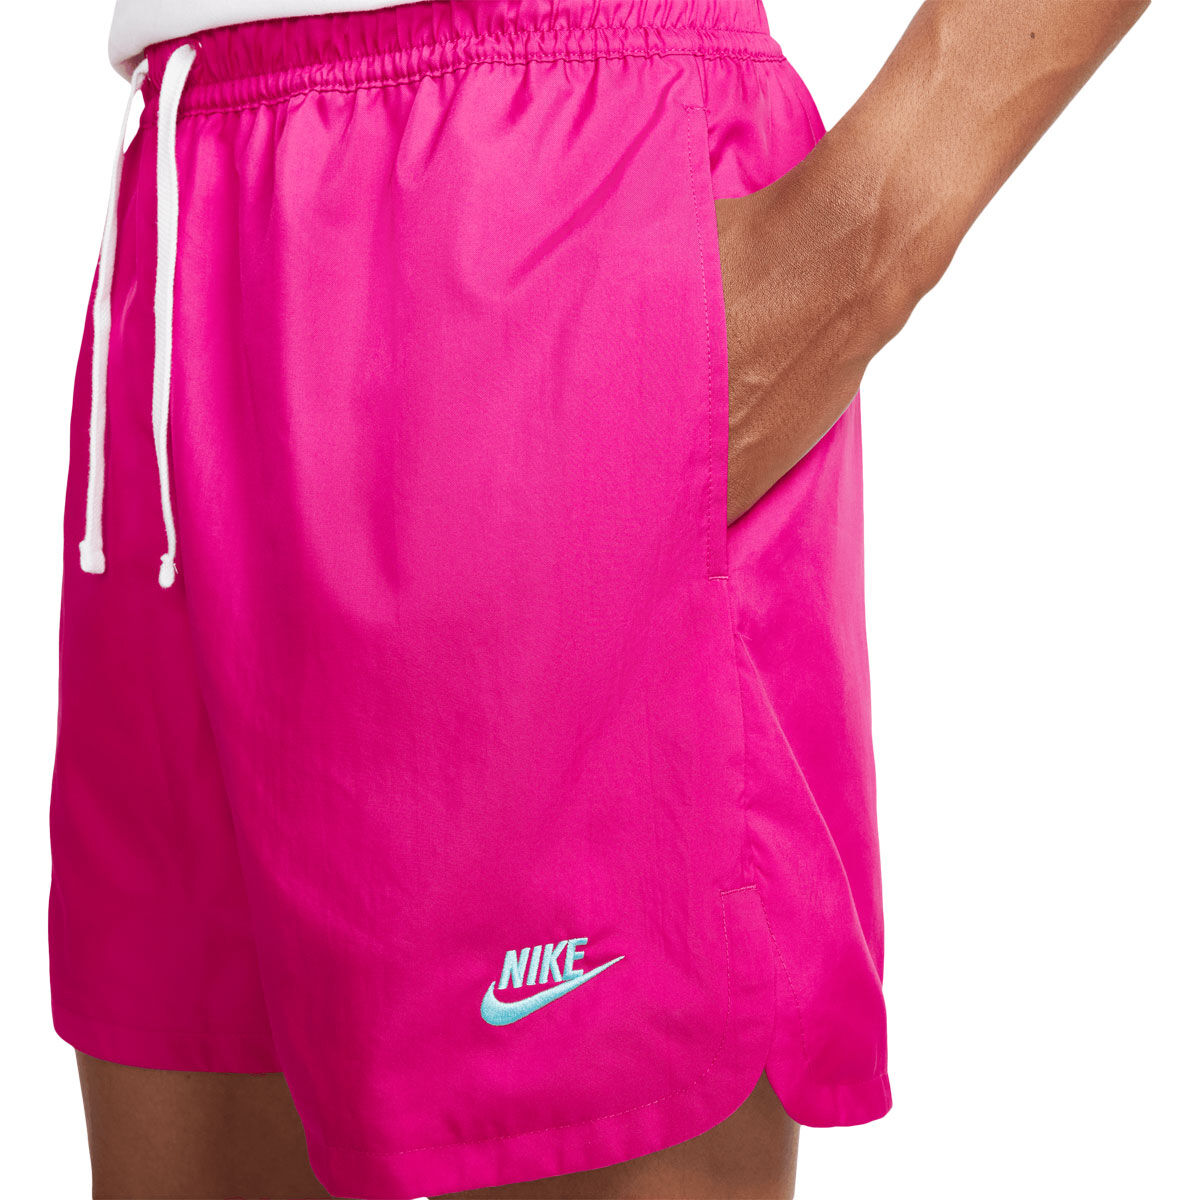 nike mens shorts pink